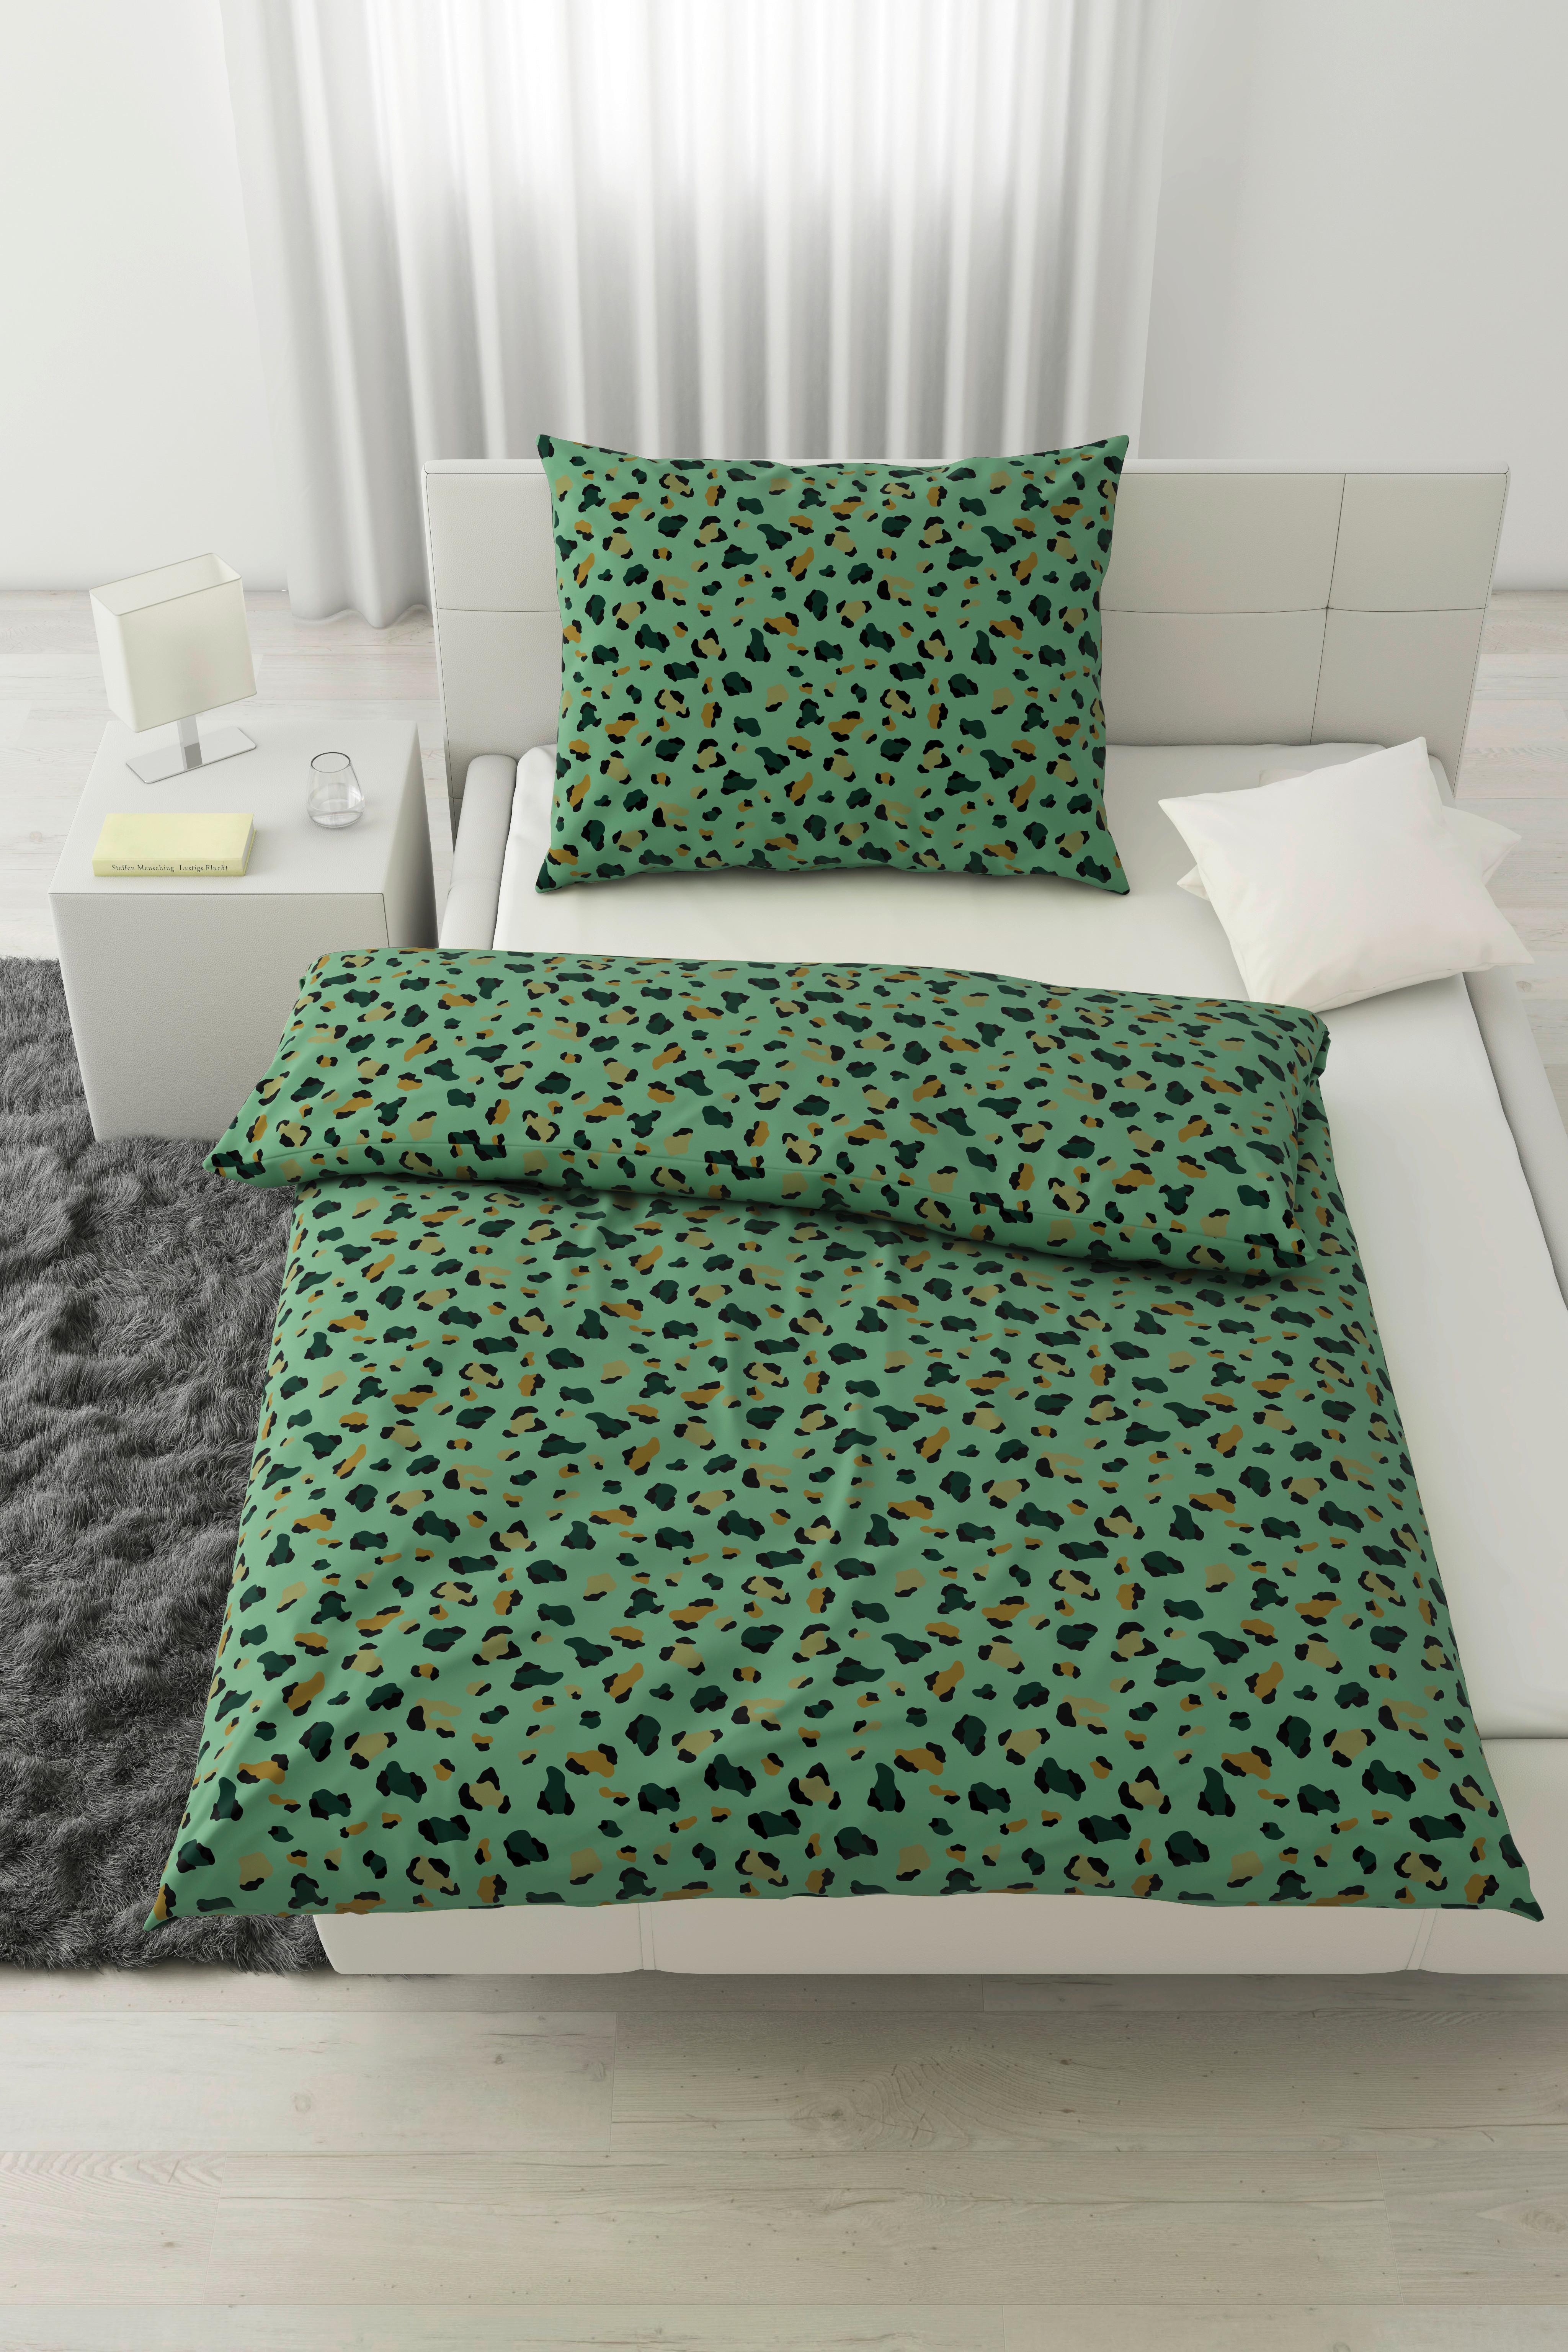 Posteljina Animal -Ext- - zelena, tekstil (140/200cm) - Modern Living